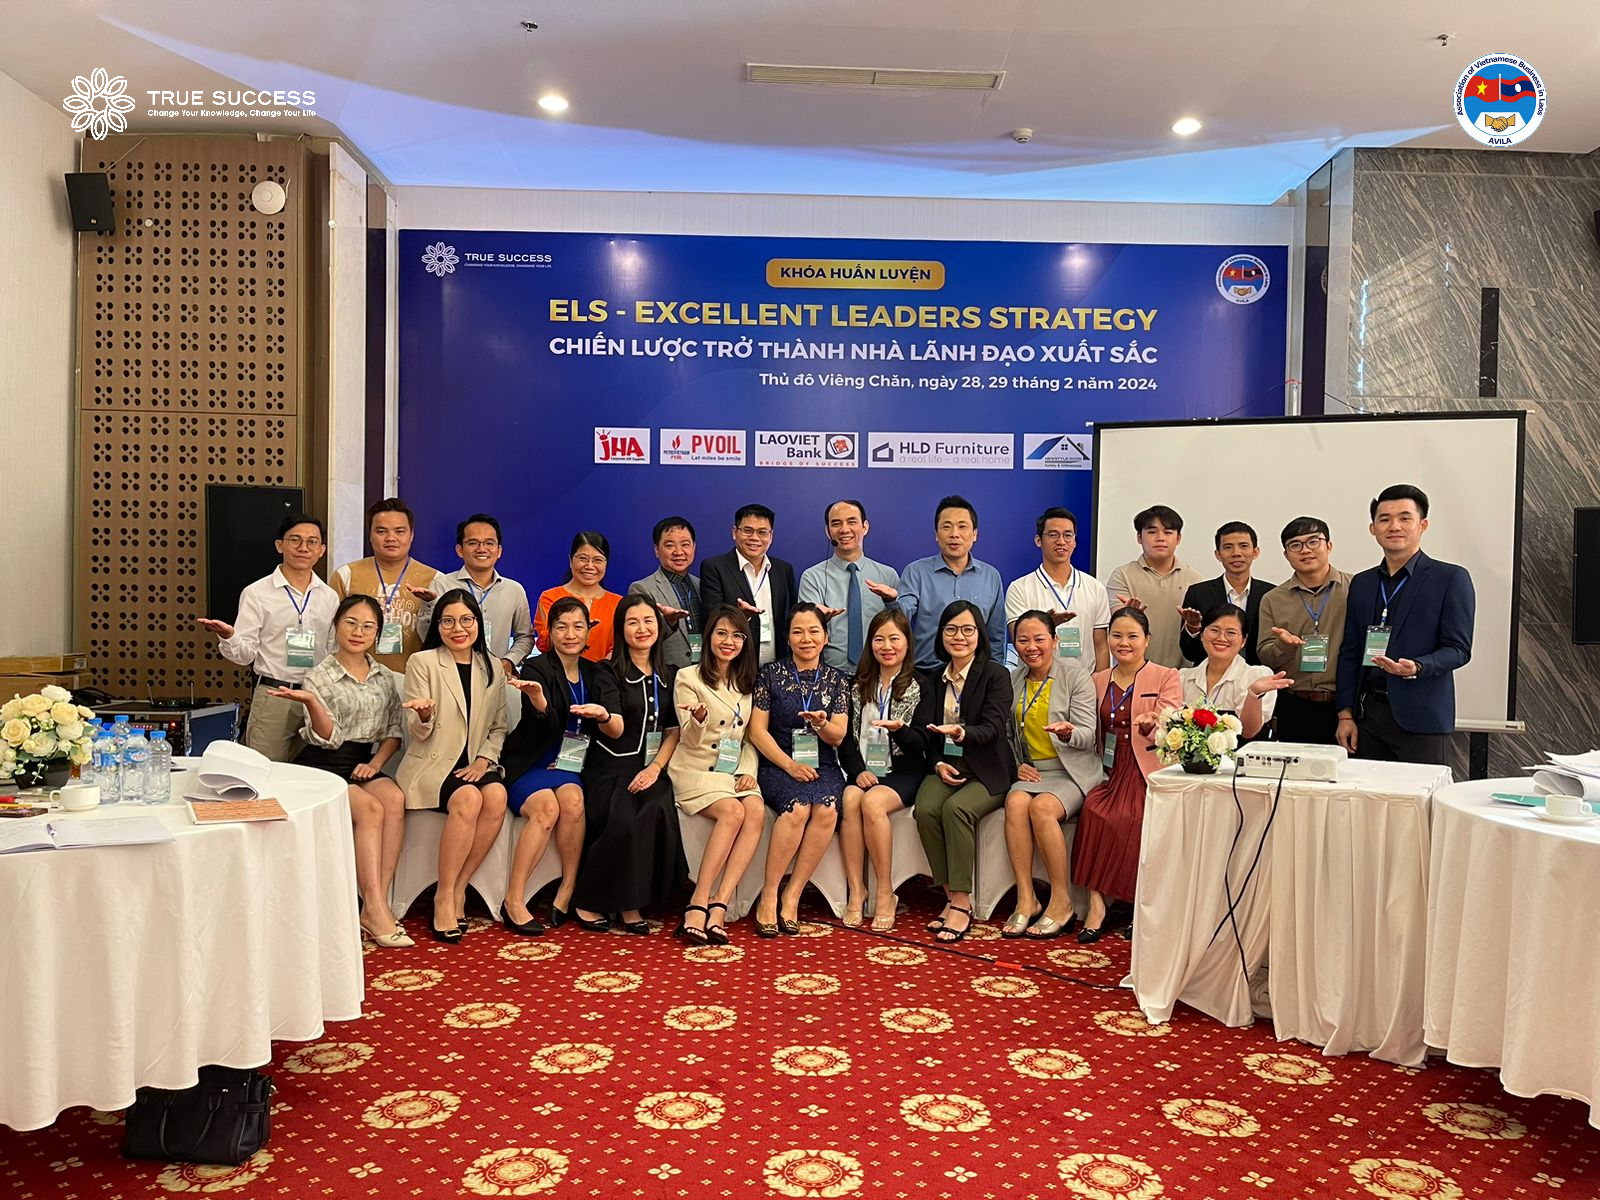 Khóa huấn luyện Chiến lược trở thành nhà lãnh đạo xuất sắc tại thủ đô Vientiane – Lào